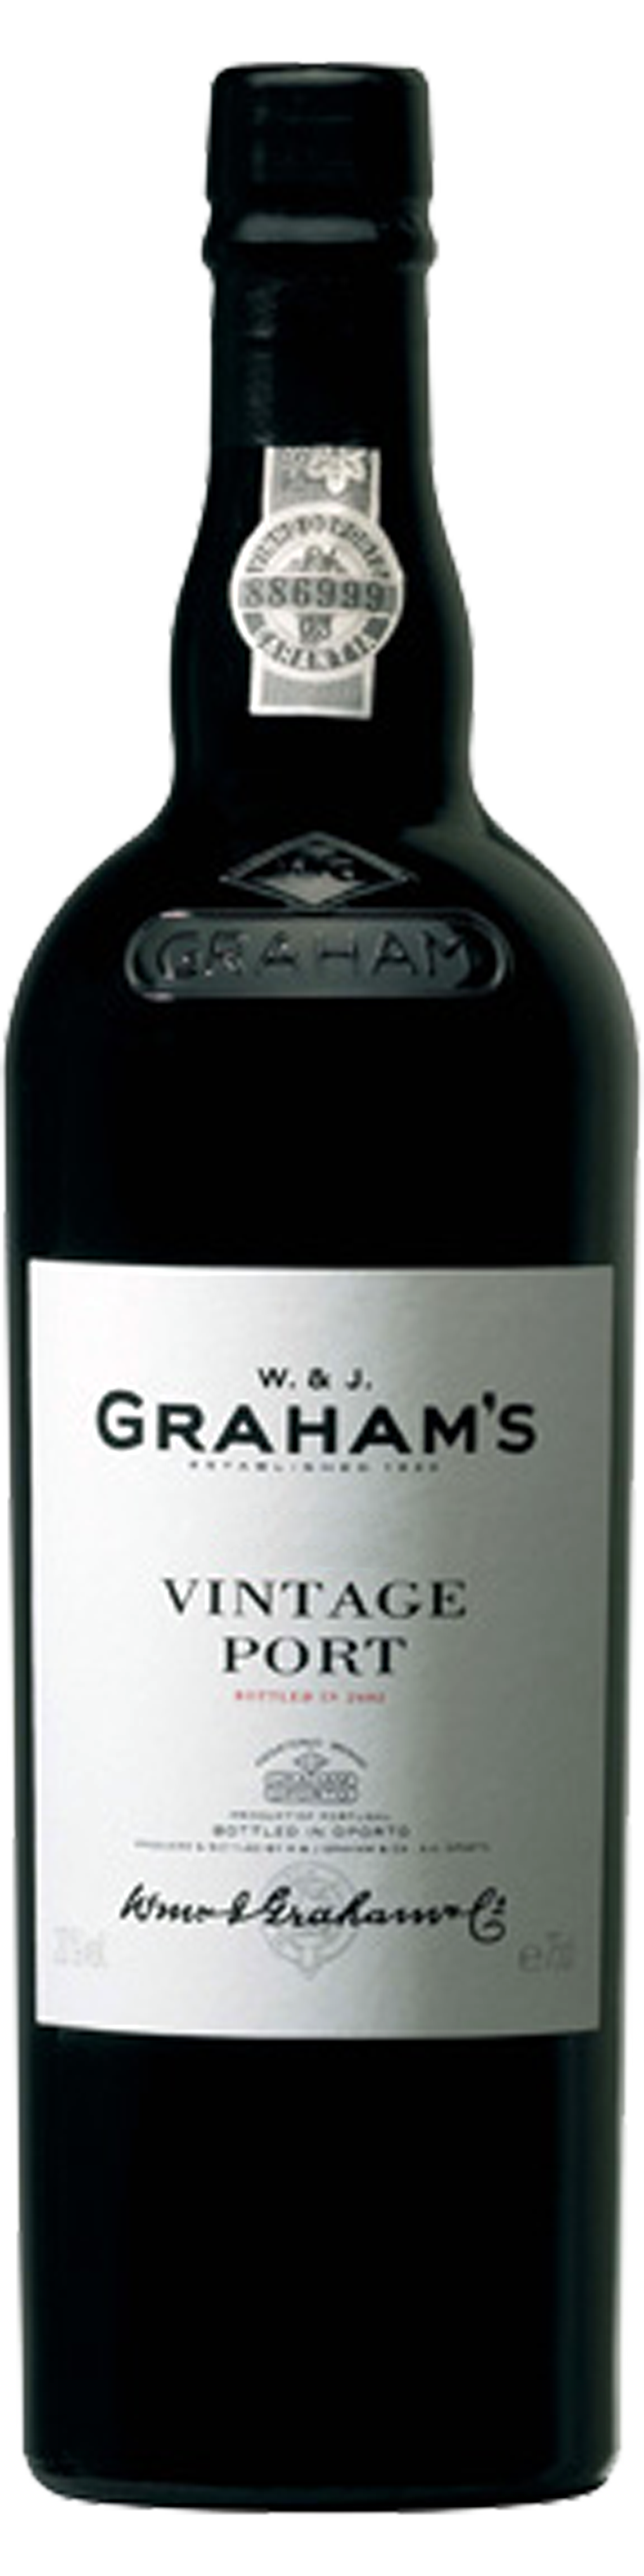 Bottle shot of 2011 Graham's